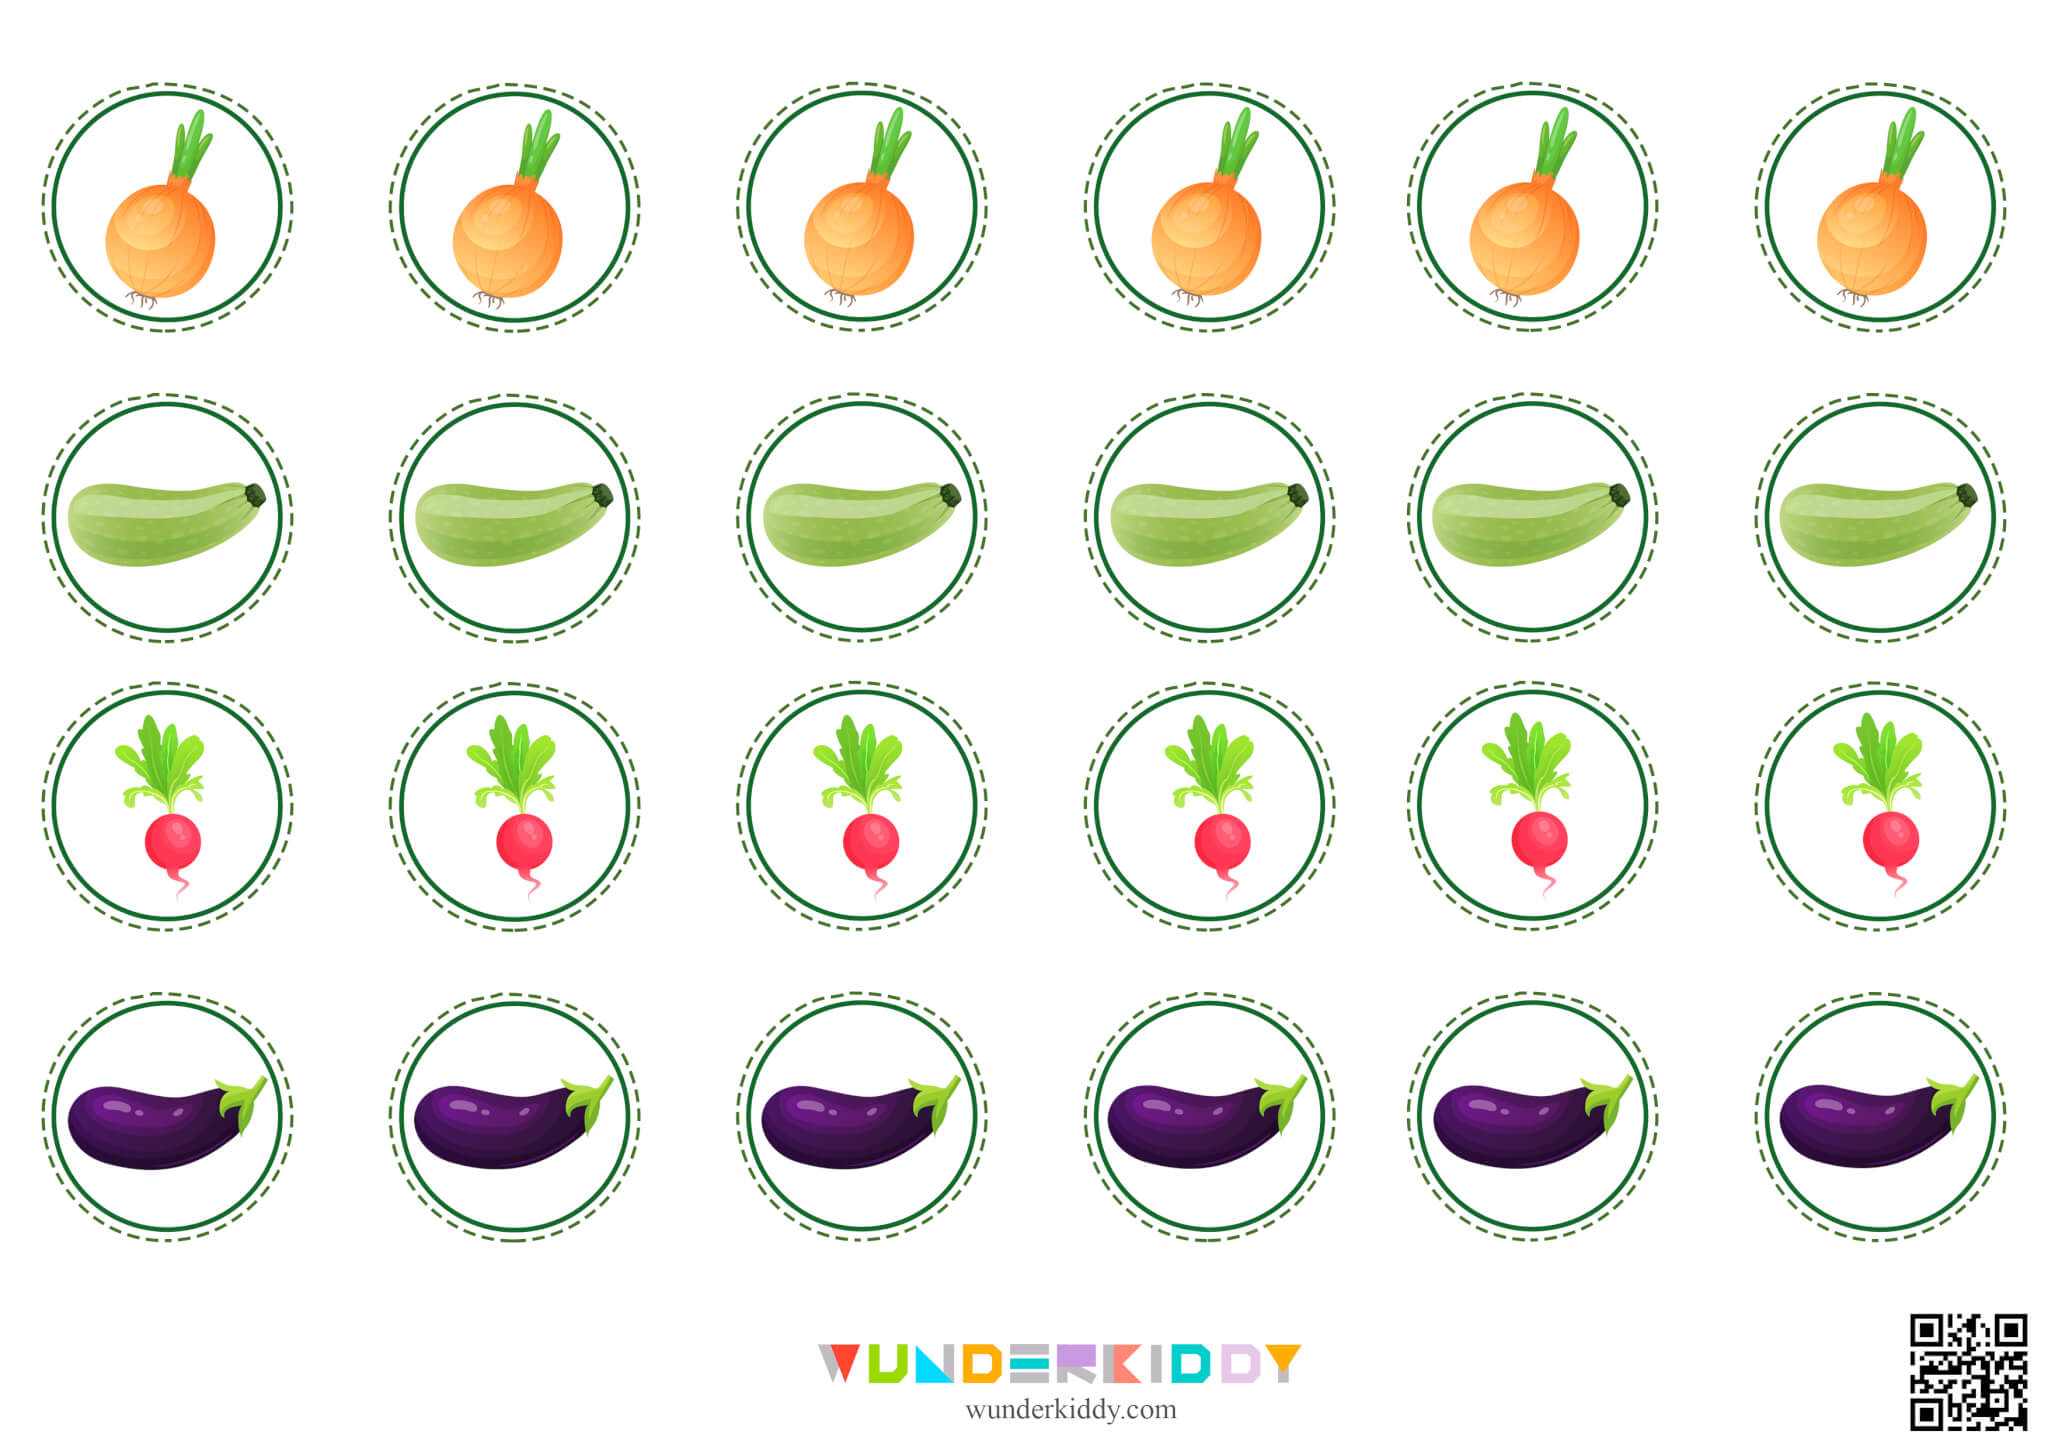 Math Dice Game for Kids Basket of Vegetables - Image 5